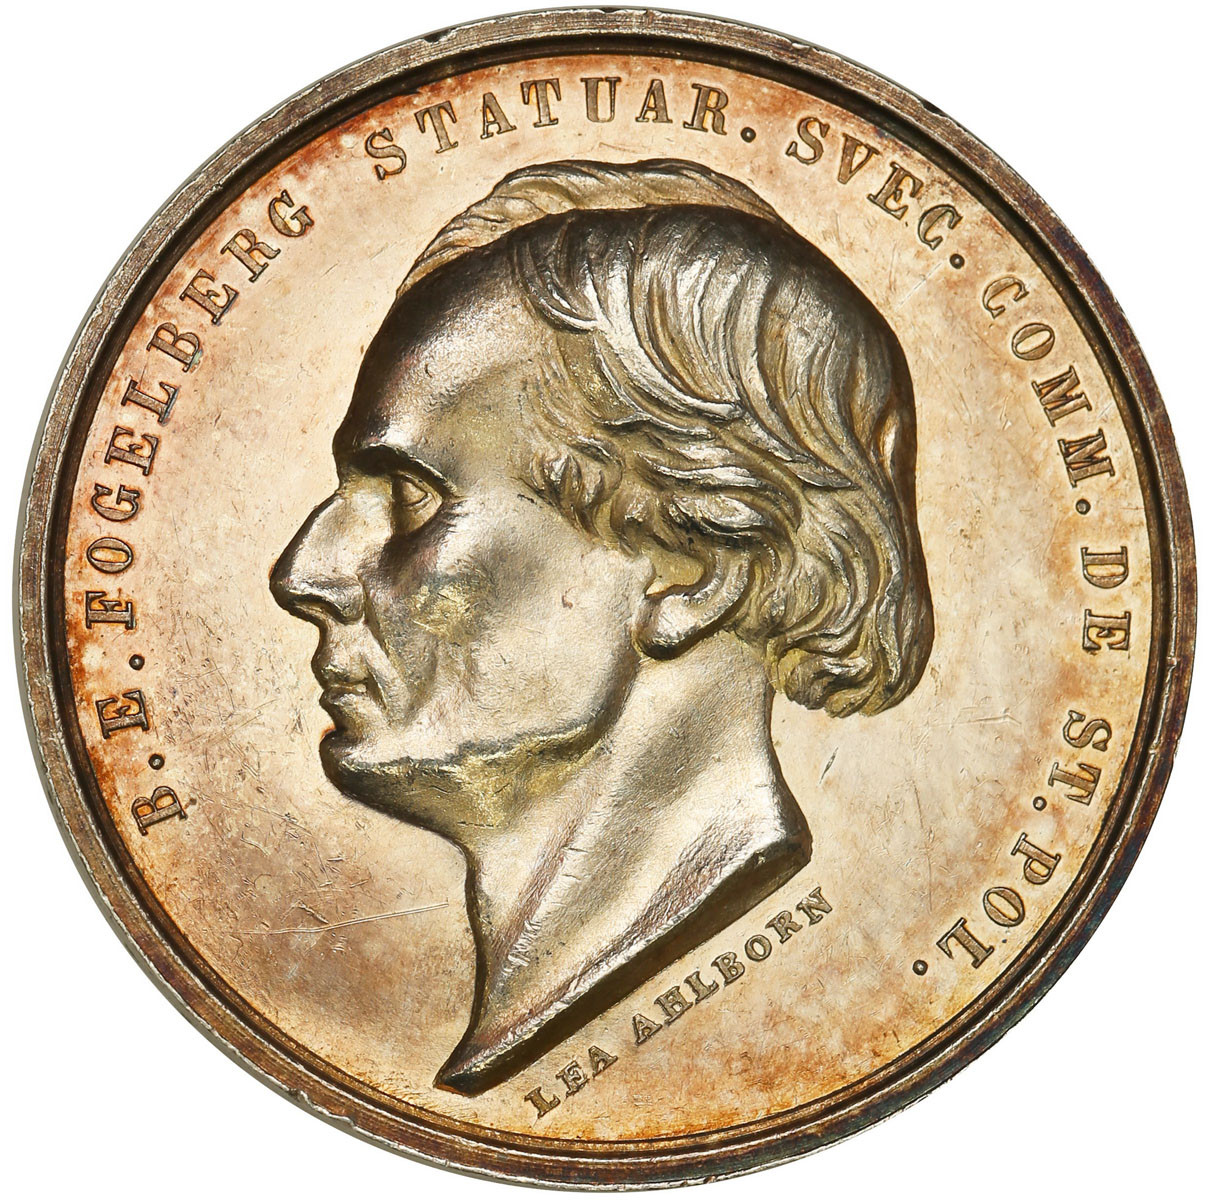 Szwecja. Medal 1844 - Fogelberg, srebro